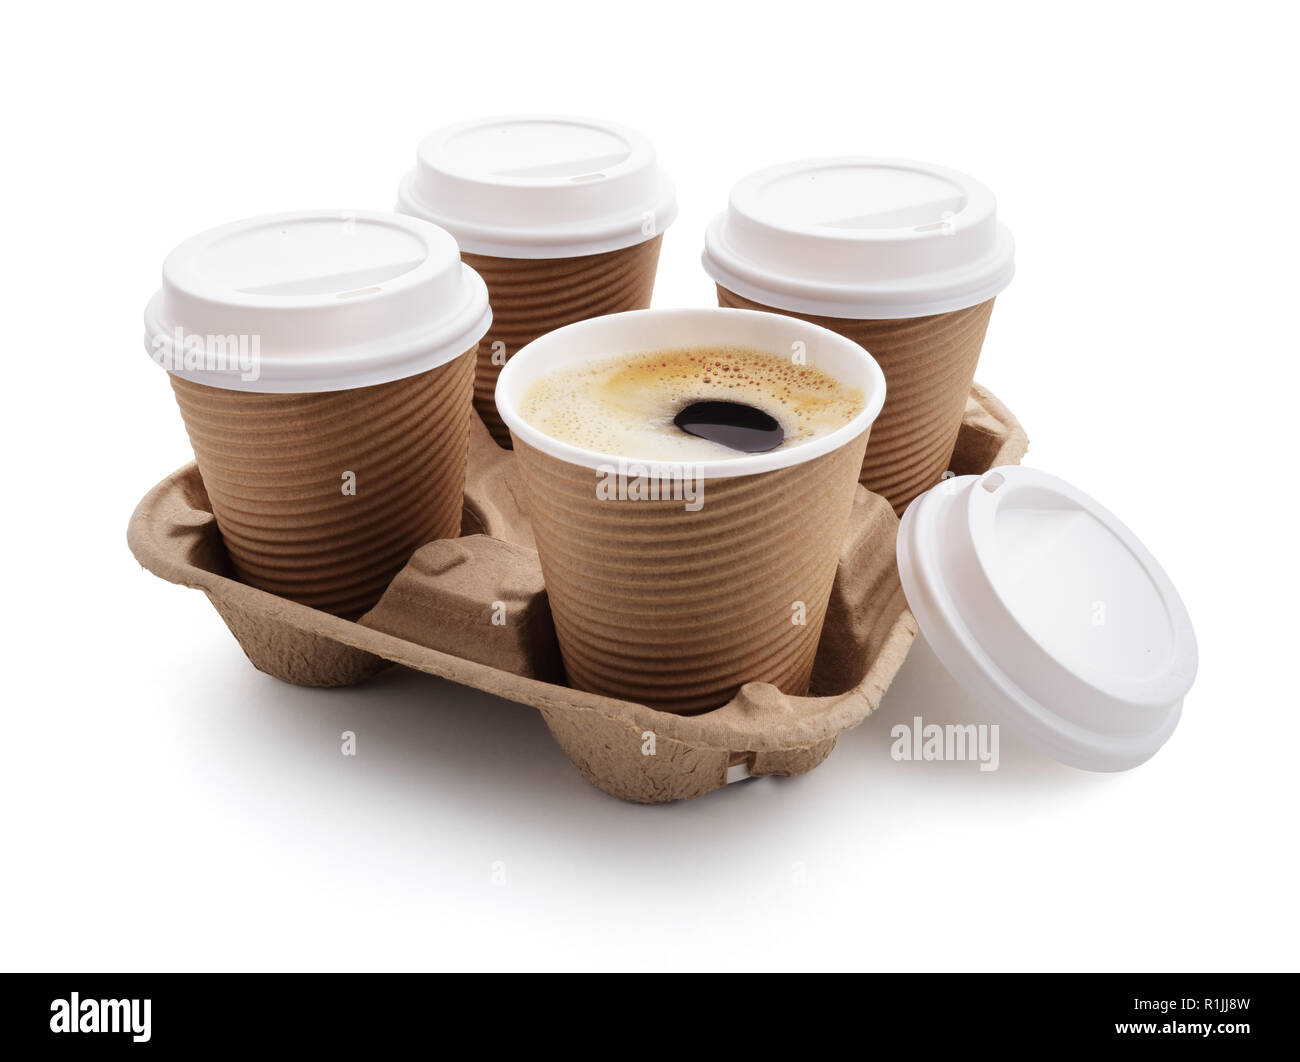 Caffè togliere le tazze monouso wit coperchi nel supporto Foto Stock